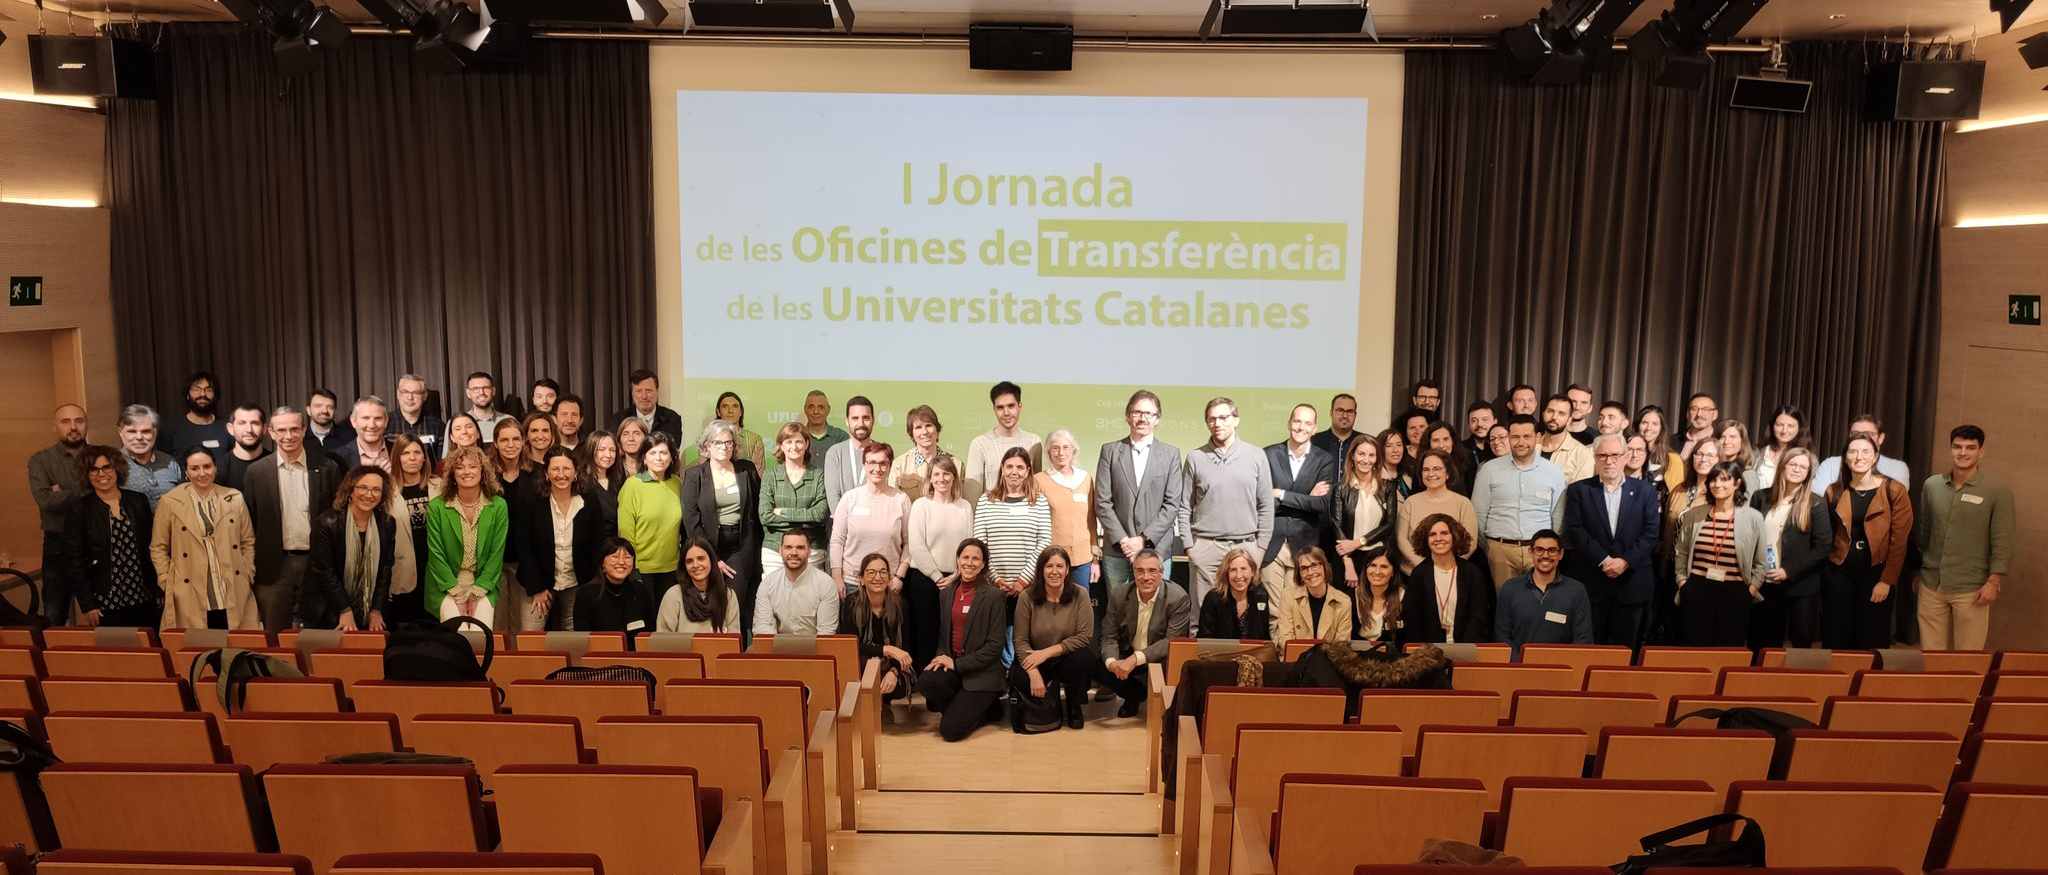 Las universidades catalanas se reúnen para debatir sobre los retos de la valorización y transferencia de conocimiento